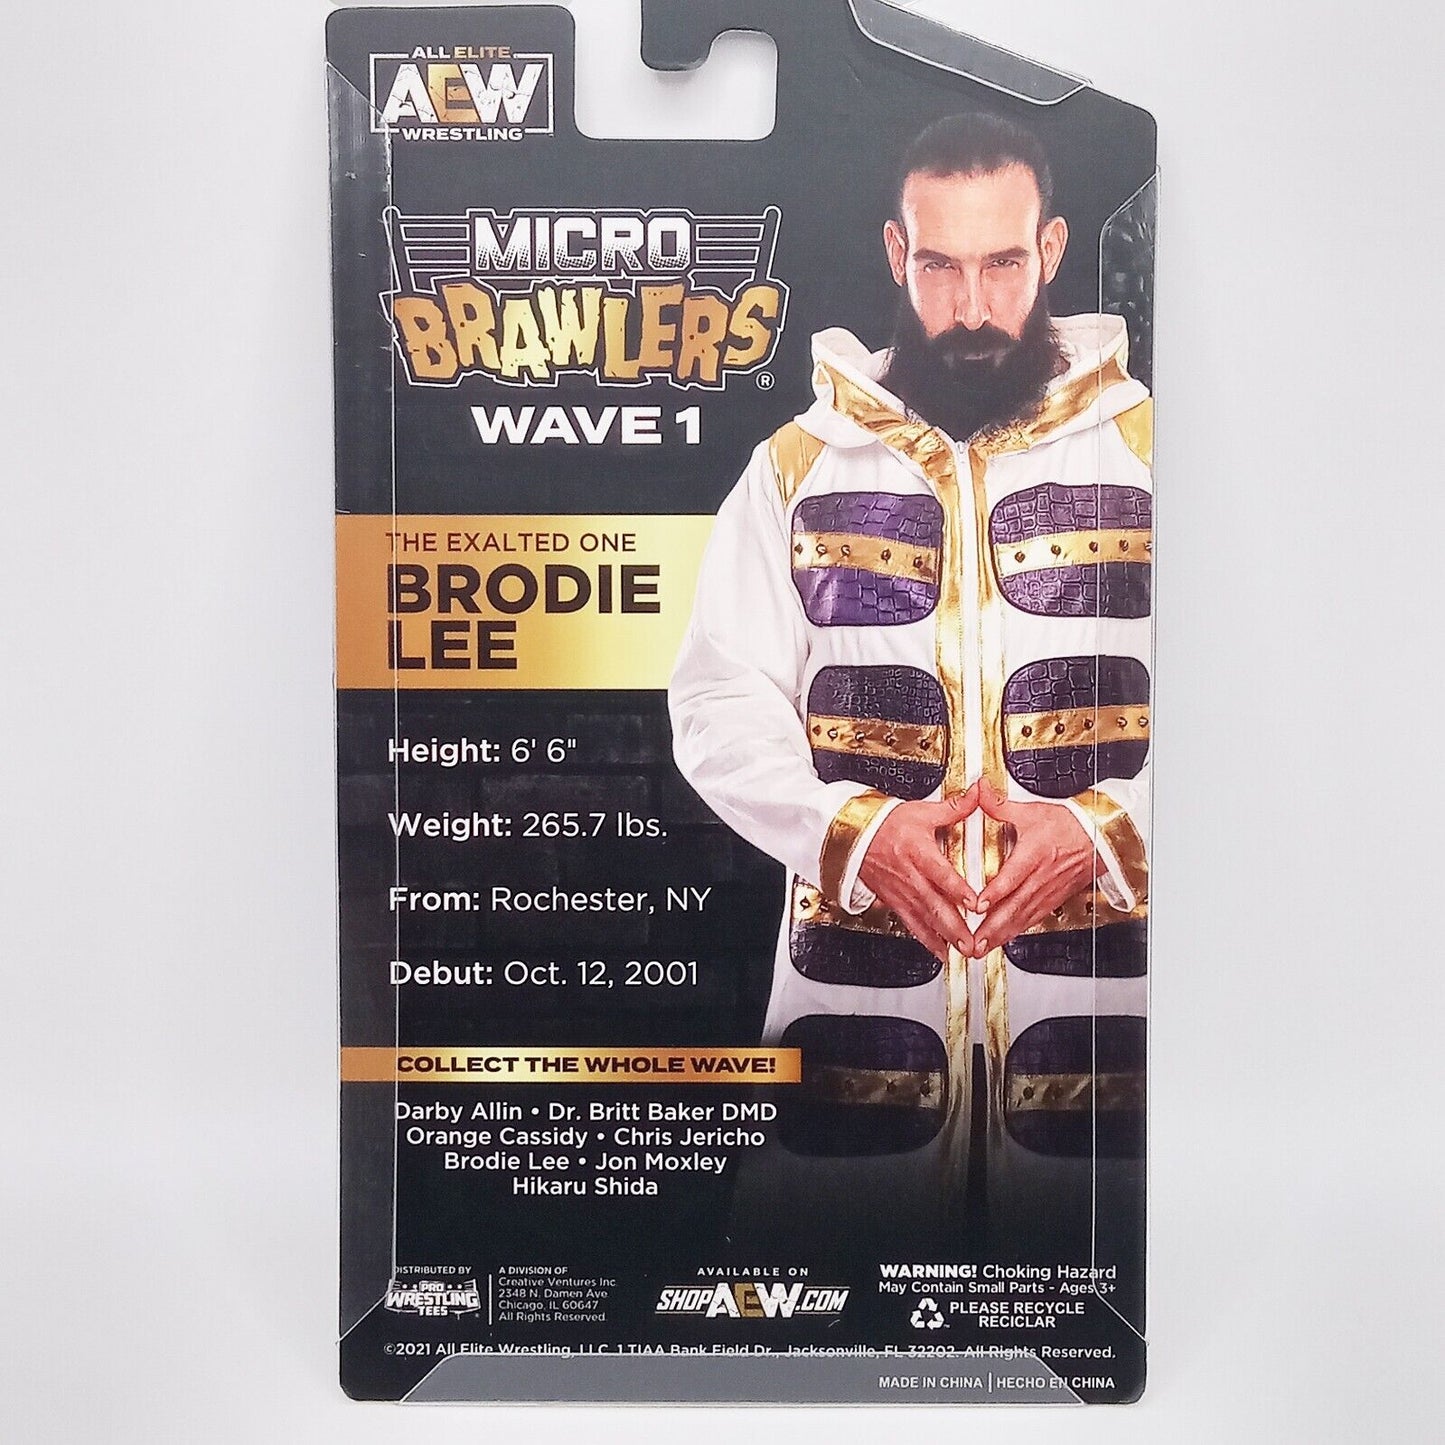 2021 AEW Pro Wrestling Tees Micro Brawlers Wave 1 Brodie Lee